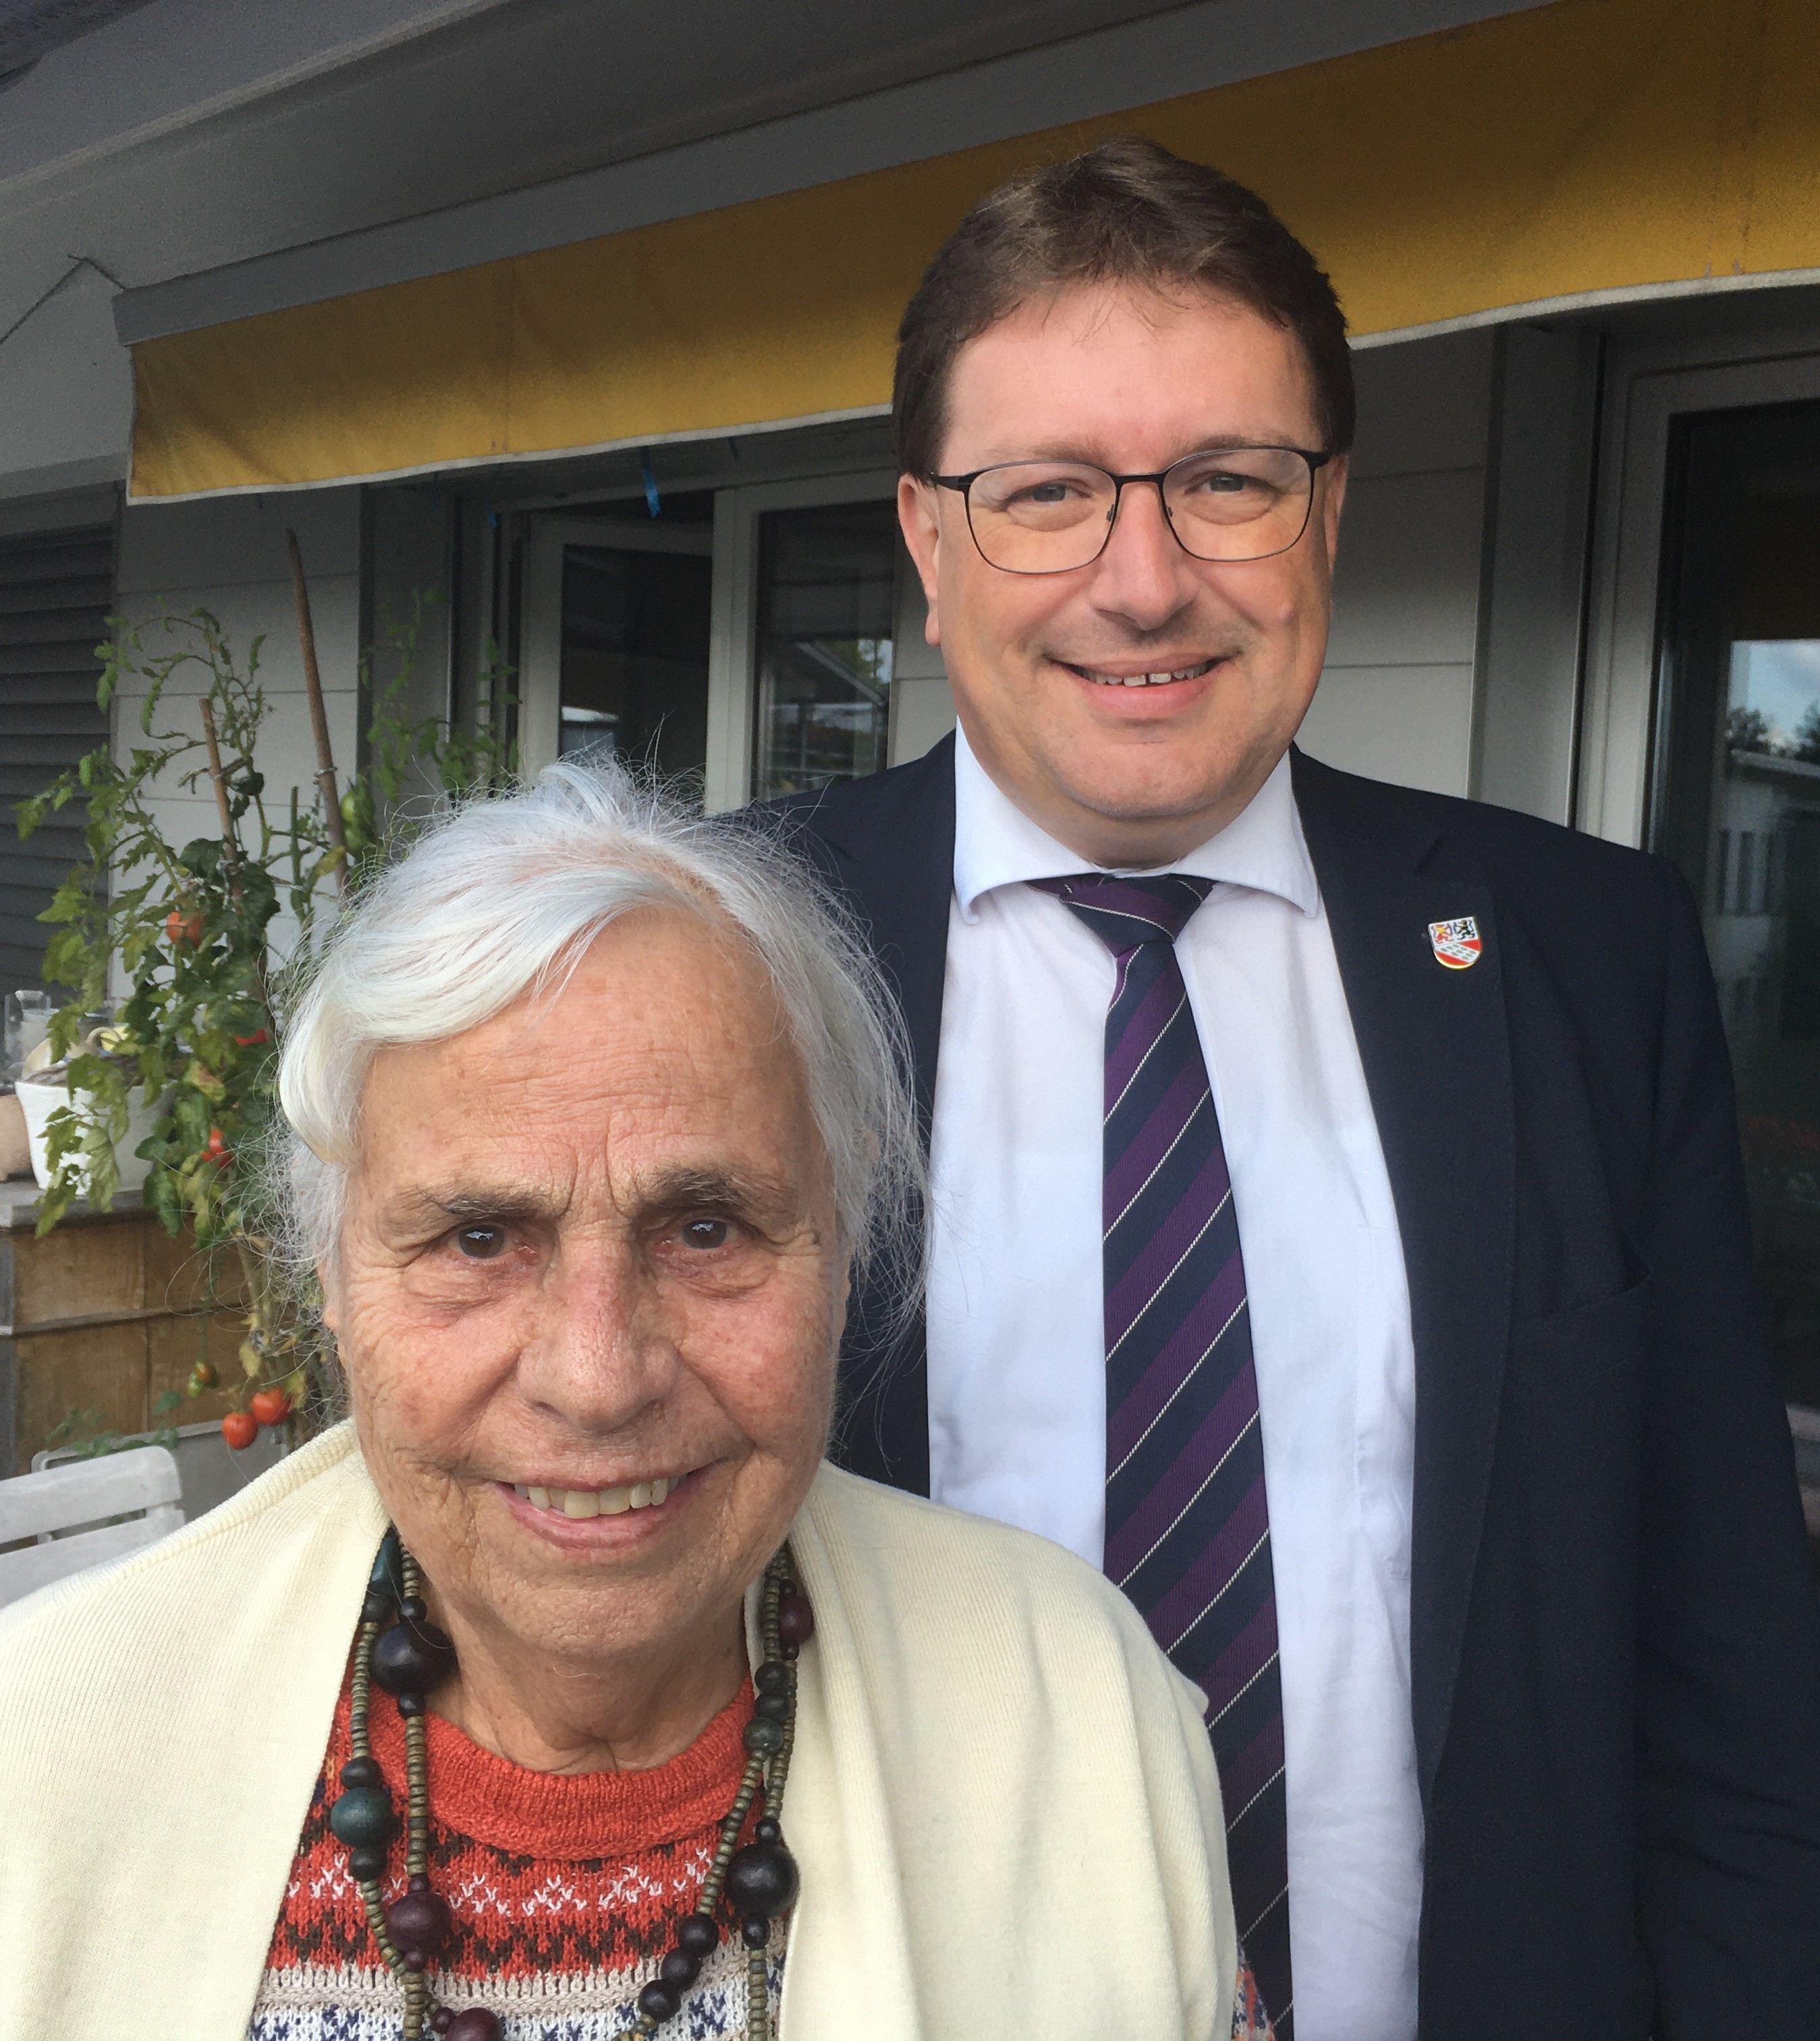 Bei bester Gesundheit feierte Frau Susanna Bonanomi, am 15. September 2021, ihren 90. Geburtstag.

Die Gemeindebehörden gratulieren ganz herzlich dazu!